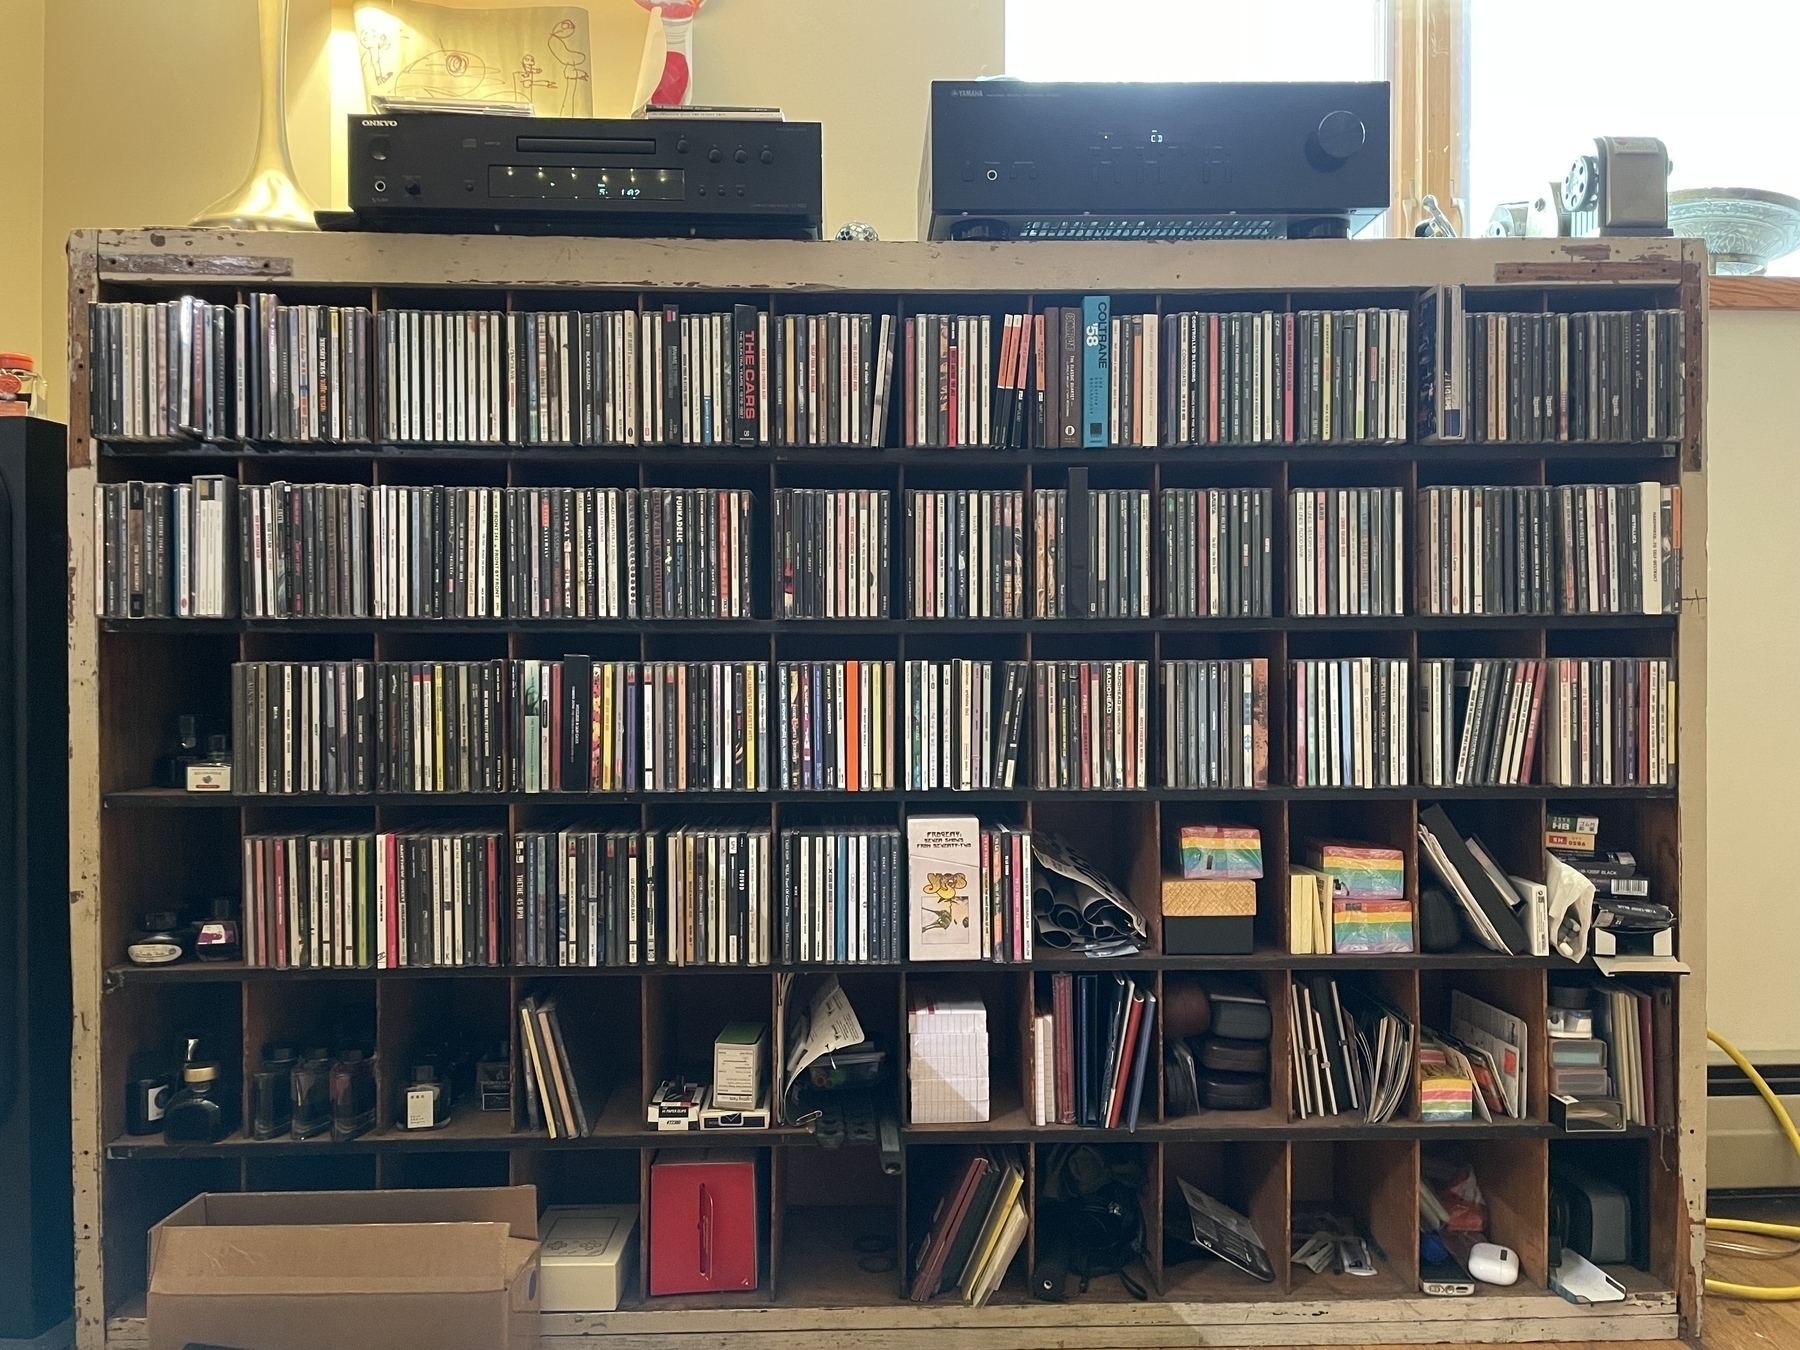 compact discs on a shelf